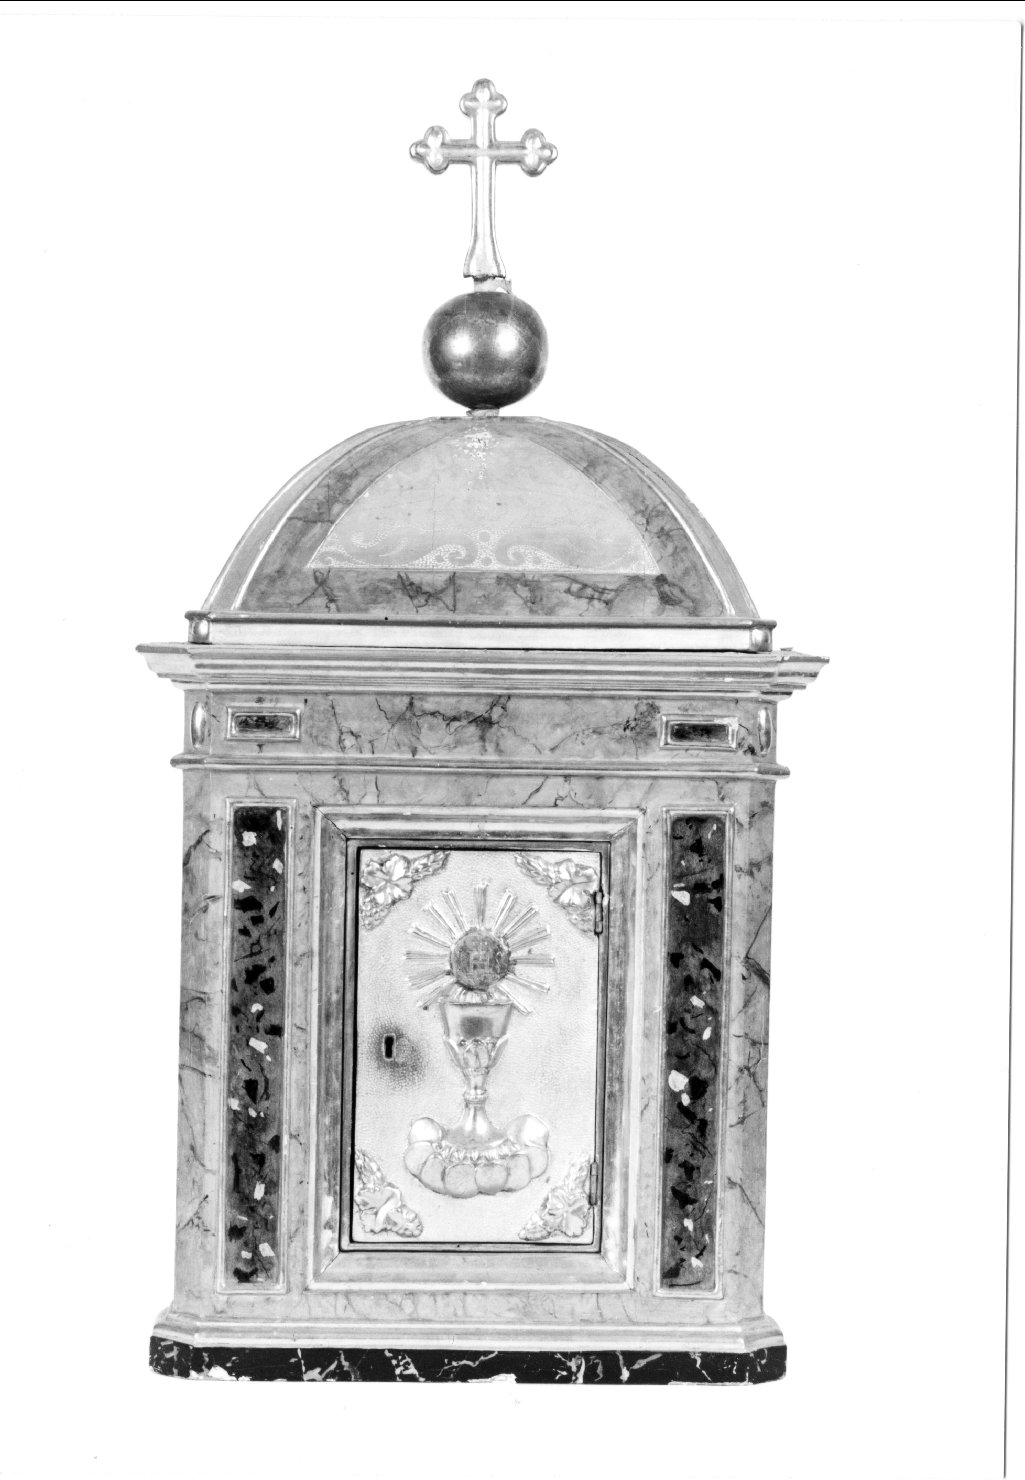 tabernacolo - a frontale architettonico - manifattura ferrarese (fine/inizio secc. XIX/ XX)